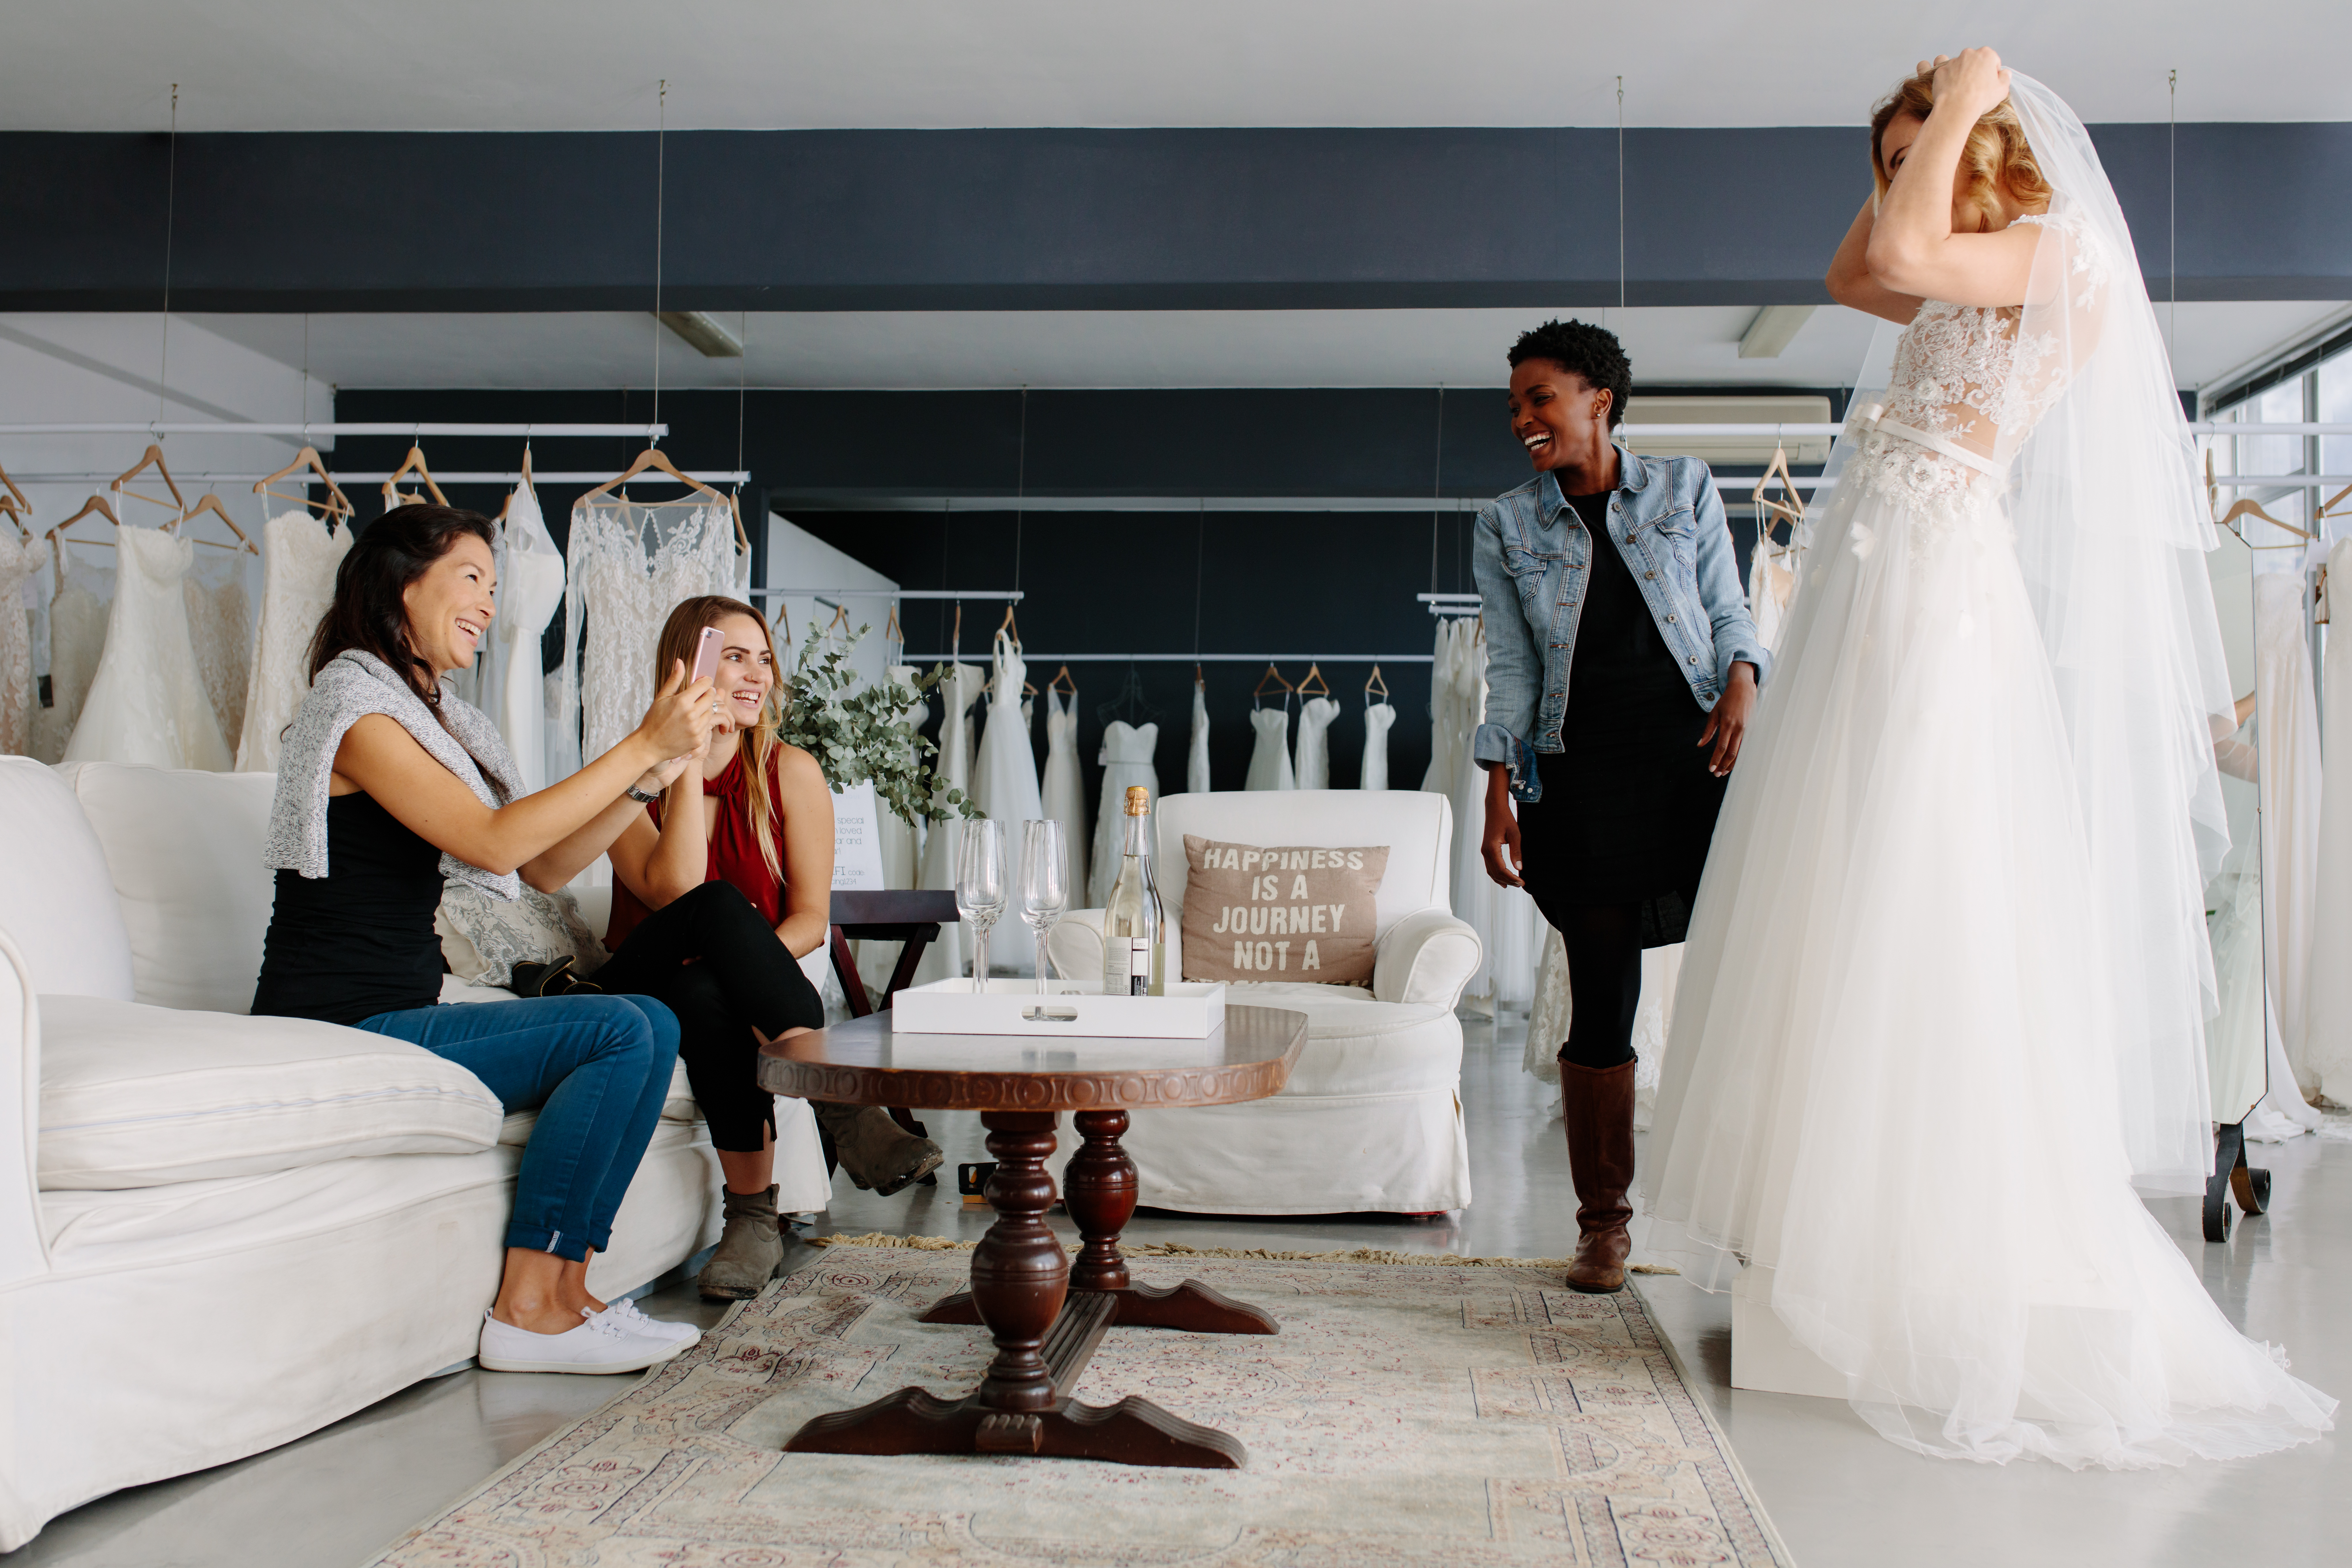 Una mujer probándose un vestido de novia rodeada de sus amigas | Foto: Shutterstock